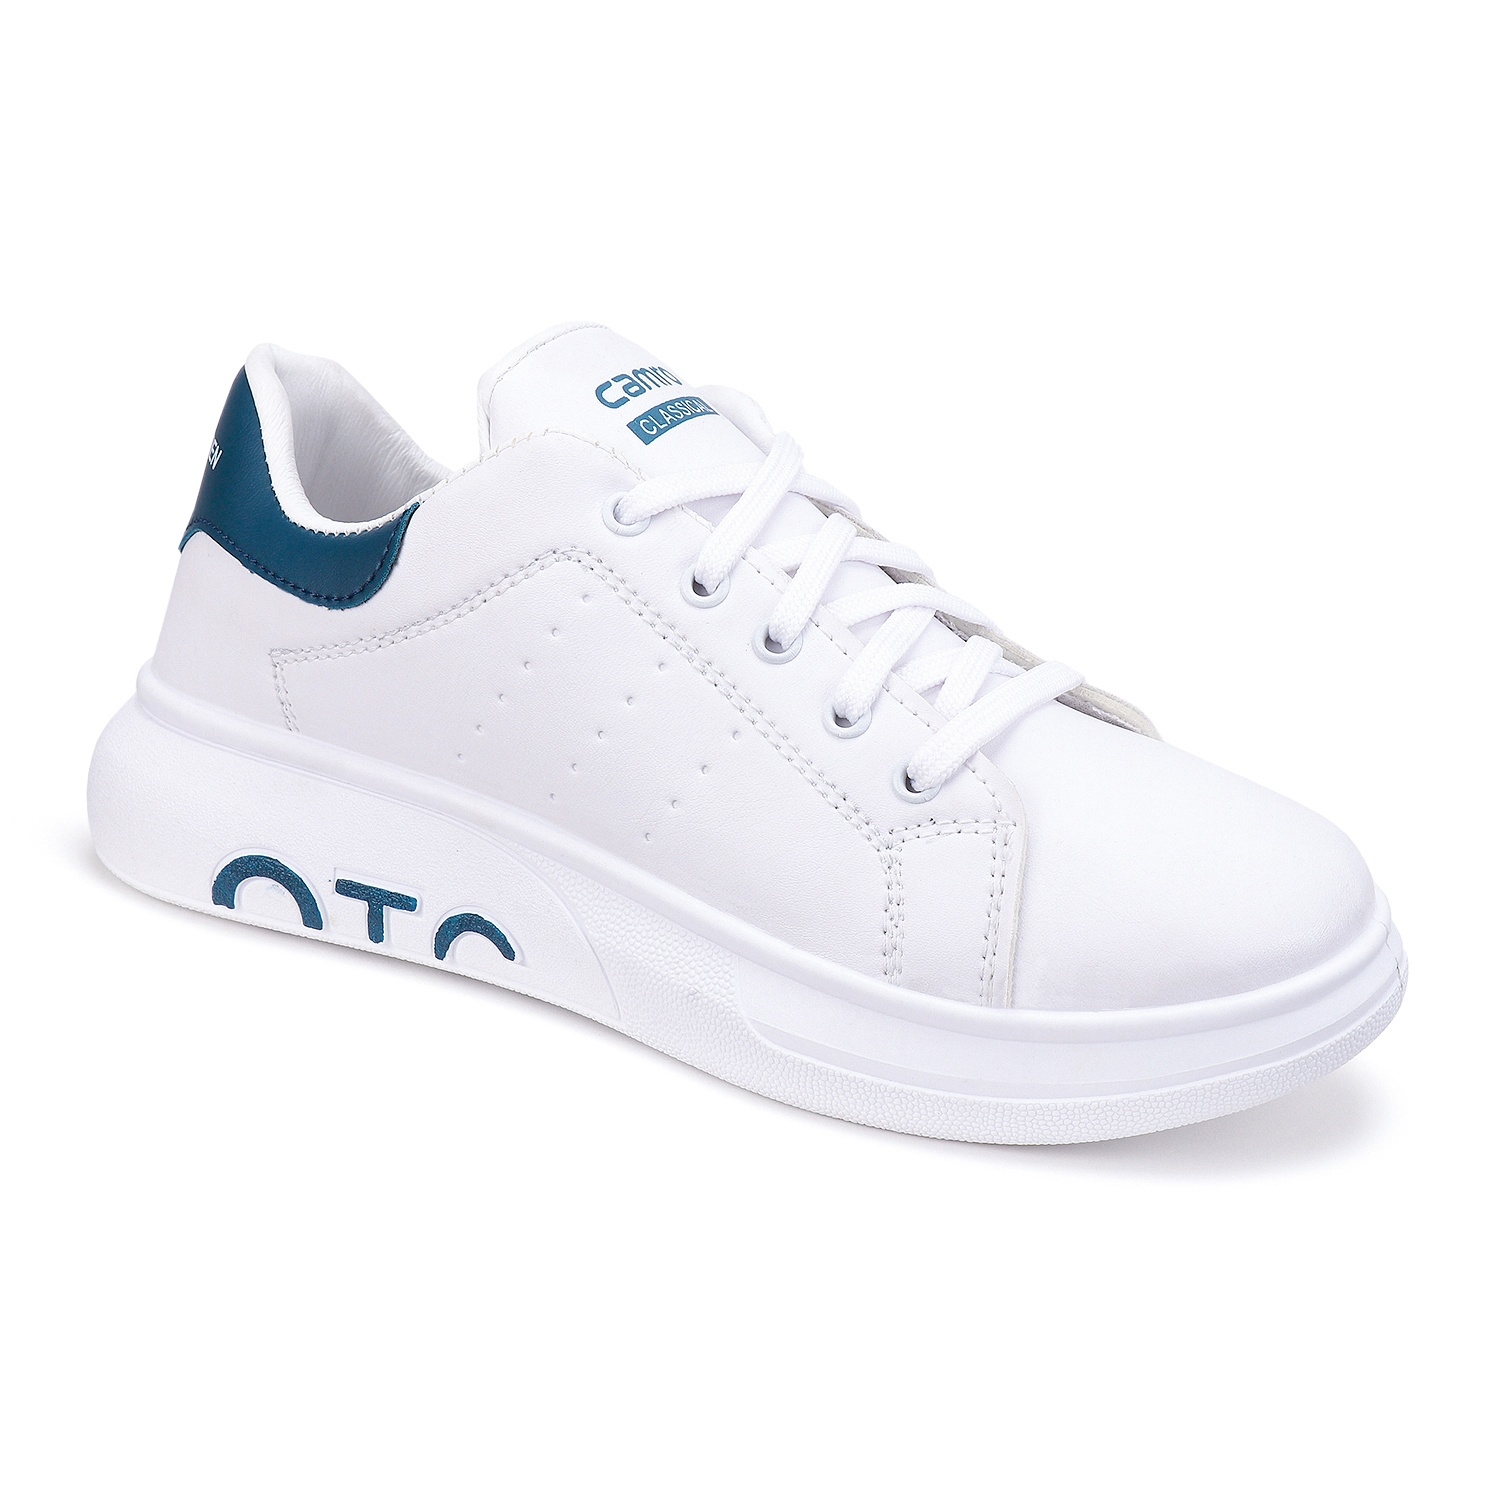 Camro OTC 1 White/T.Blue Men Running Shoe